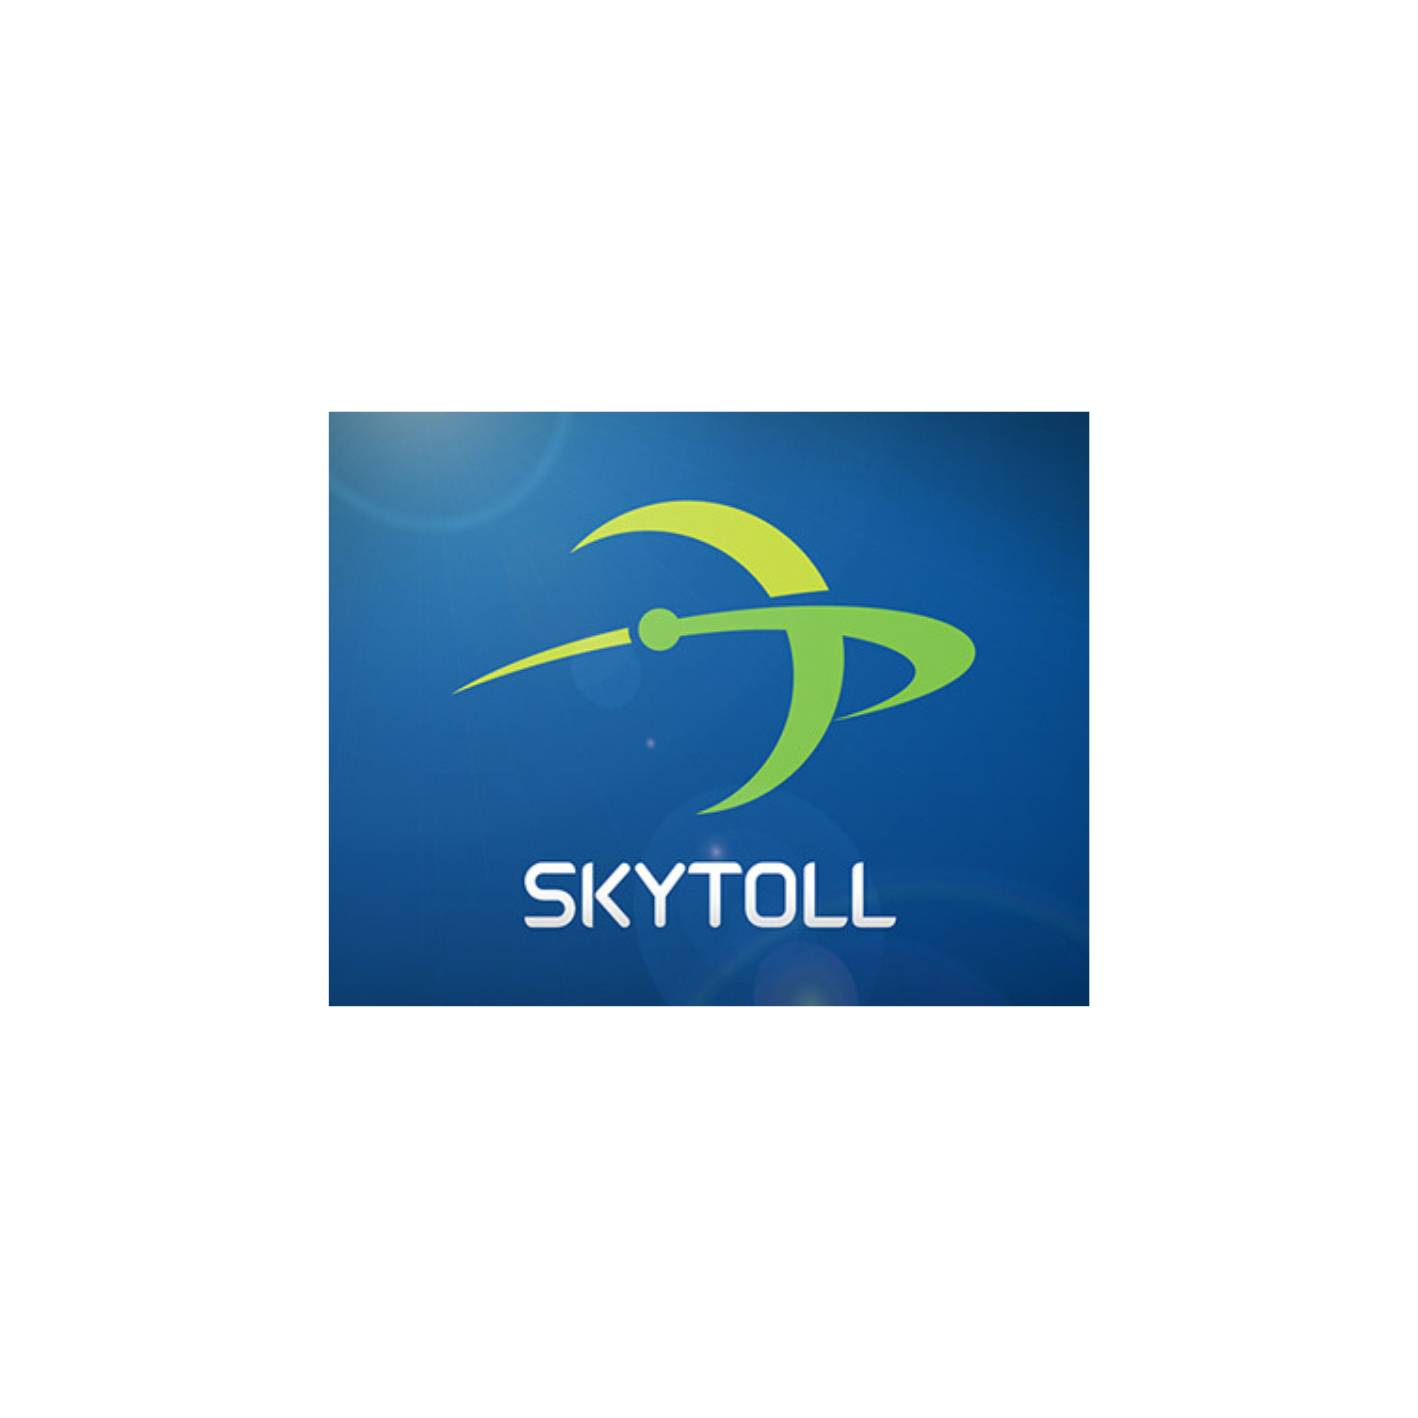 Skytoll-logó